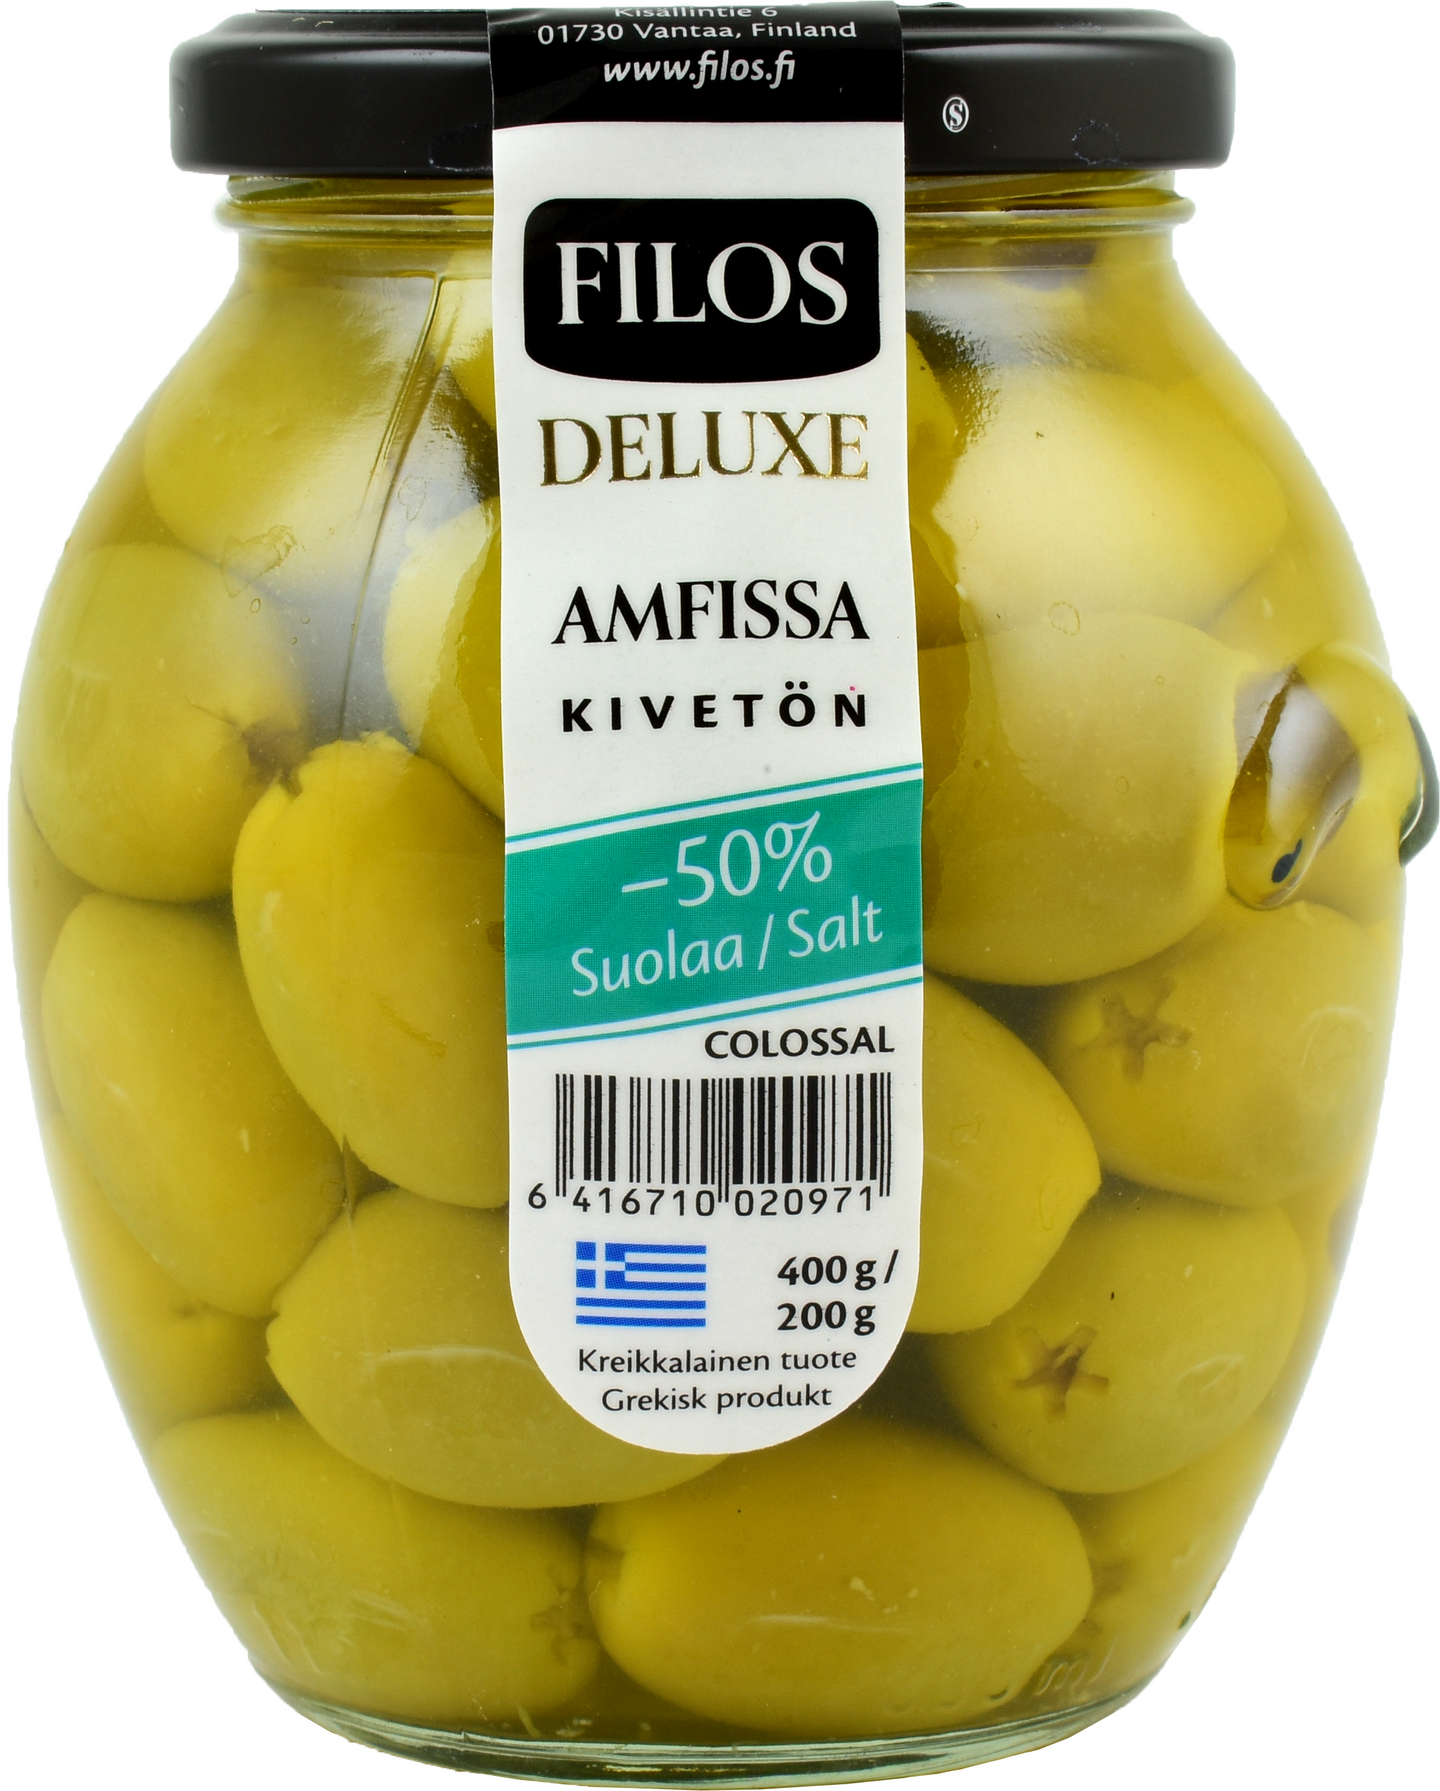 Filos Deluxe vihreä oliivi kivetön Amfissa Colossal, -50% suolaa 400g/200g